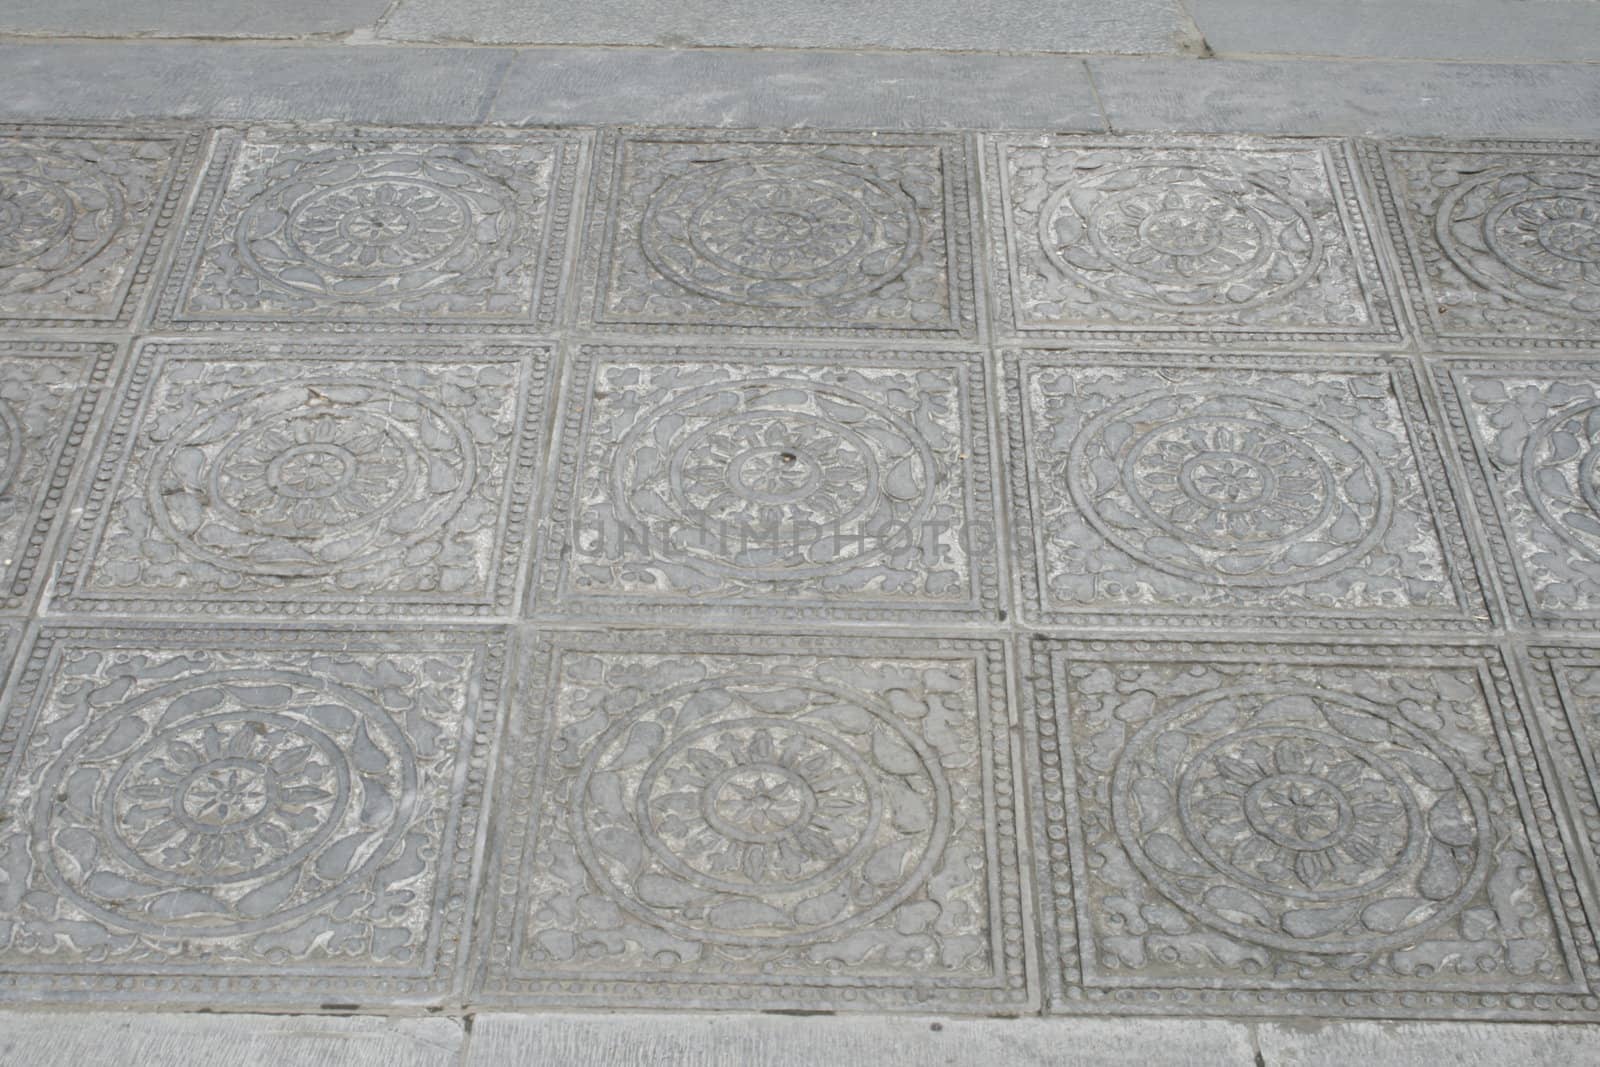 downtown of Xian, Floor tiles in front of the drawbridge